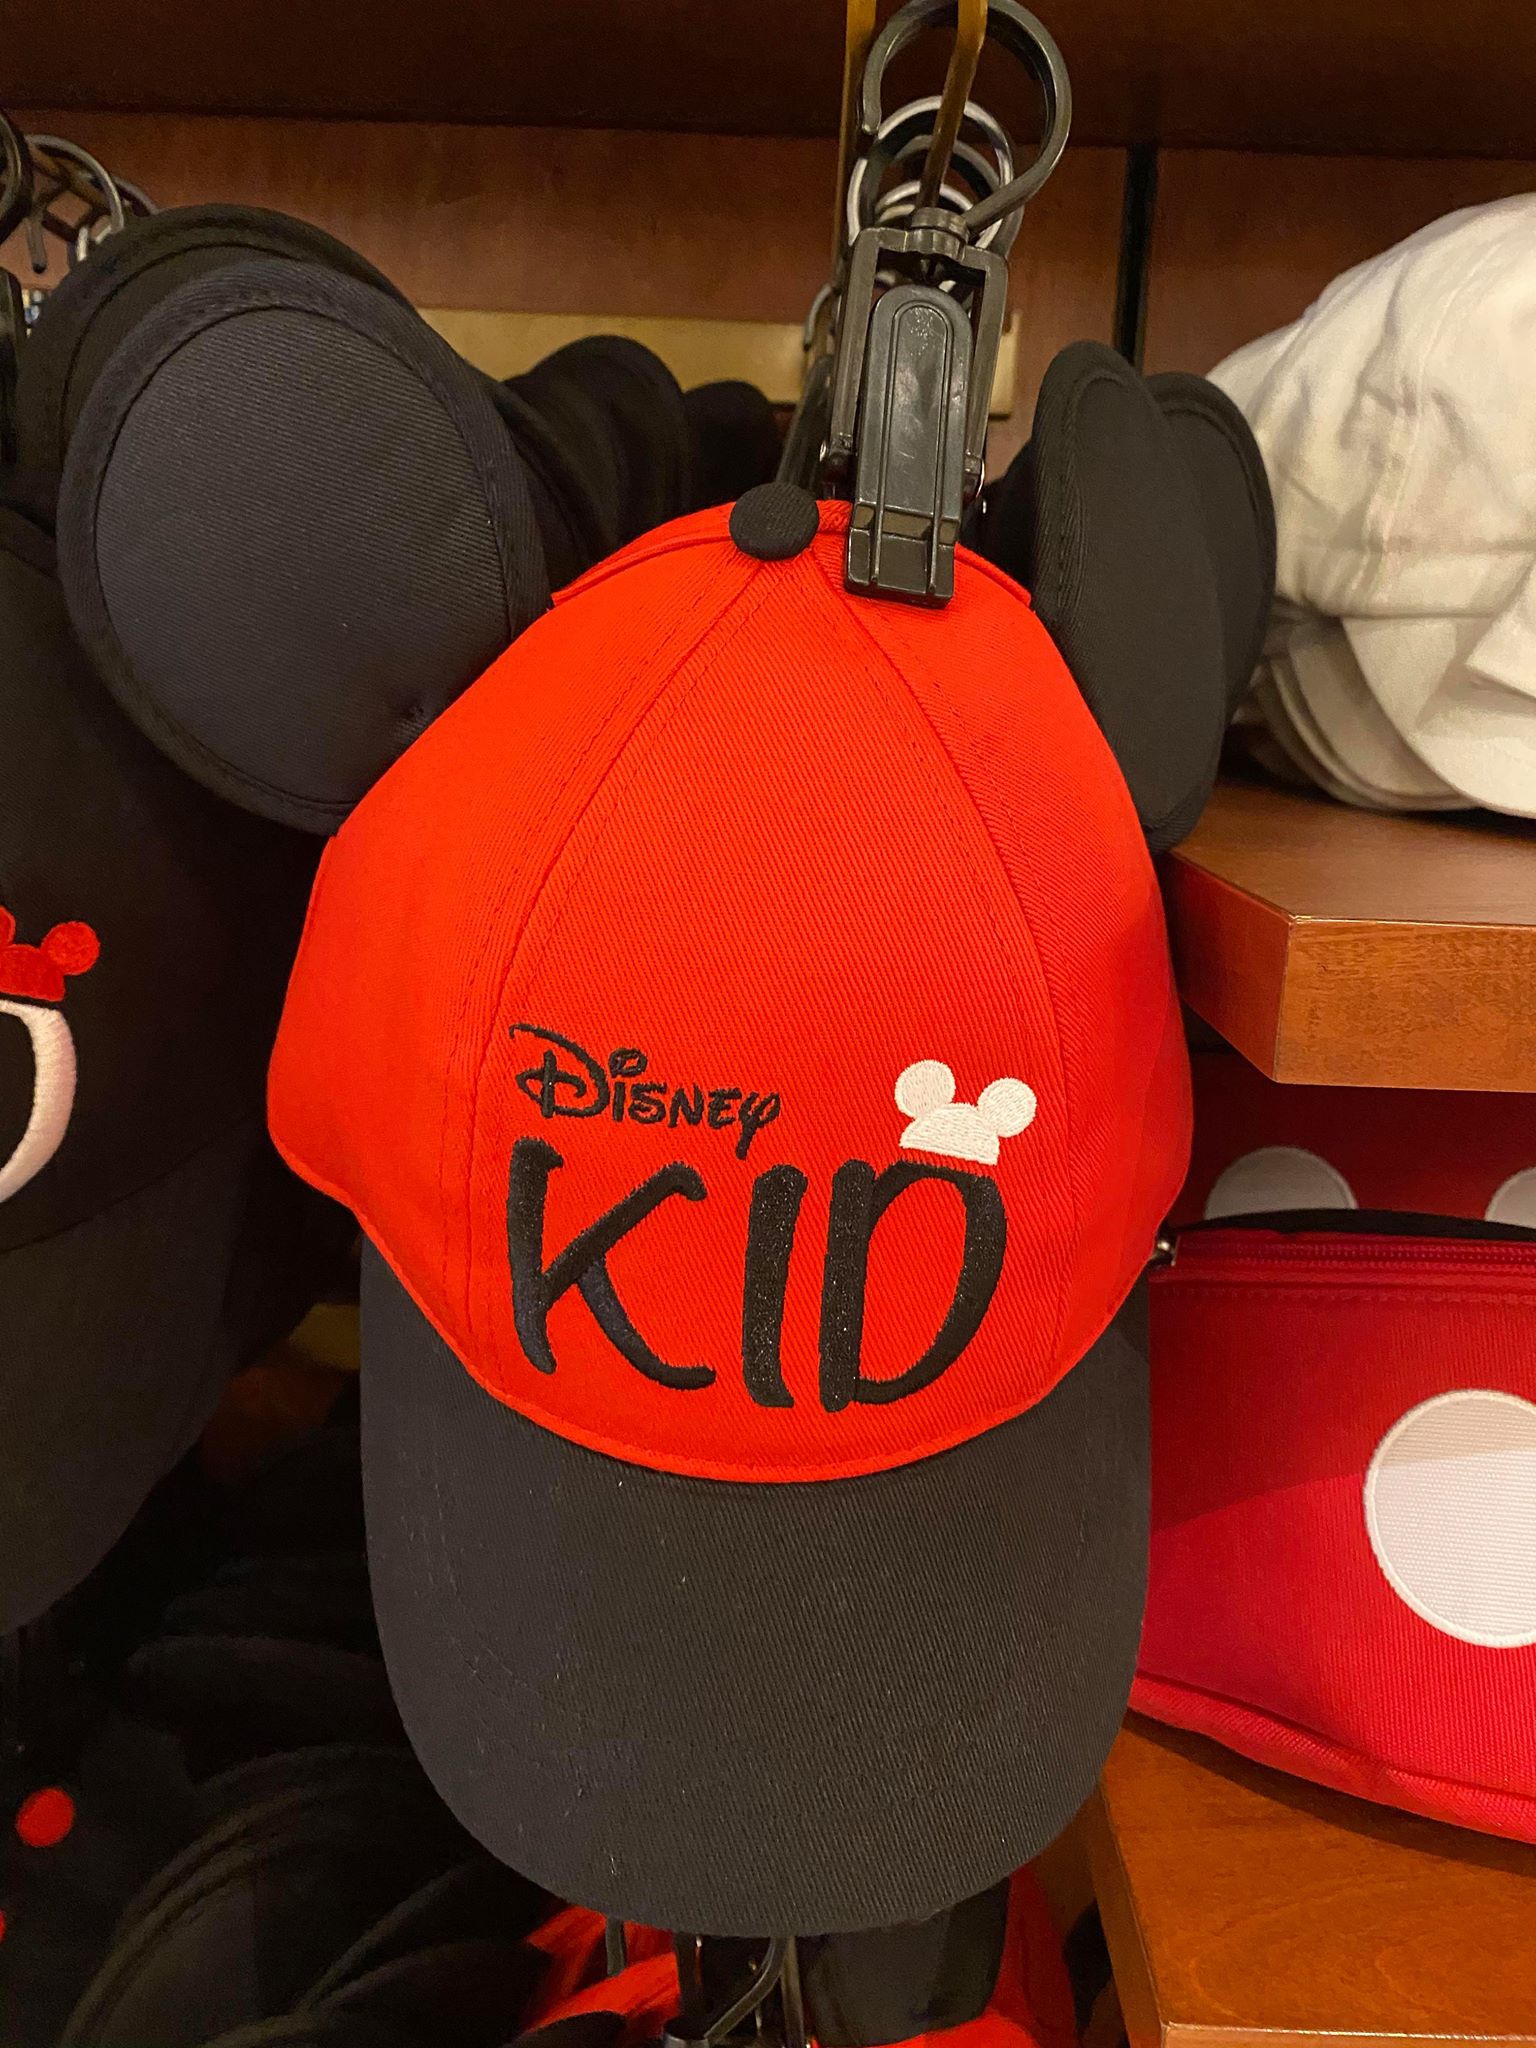 Disney Kid hat